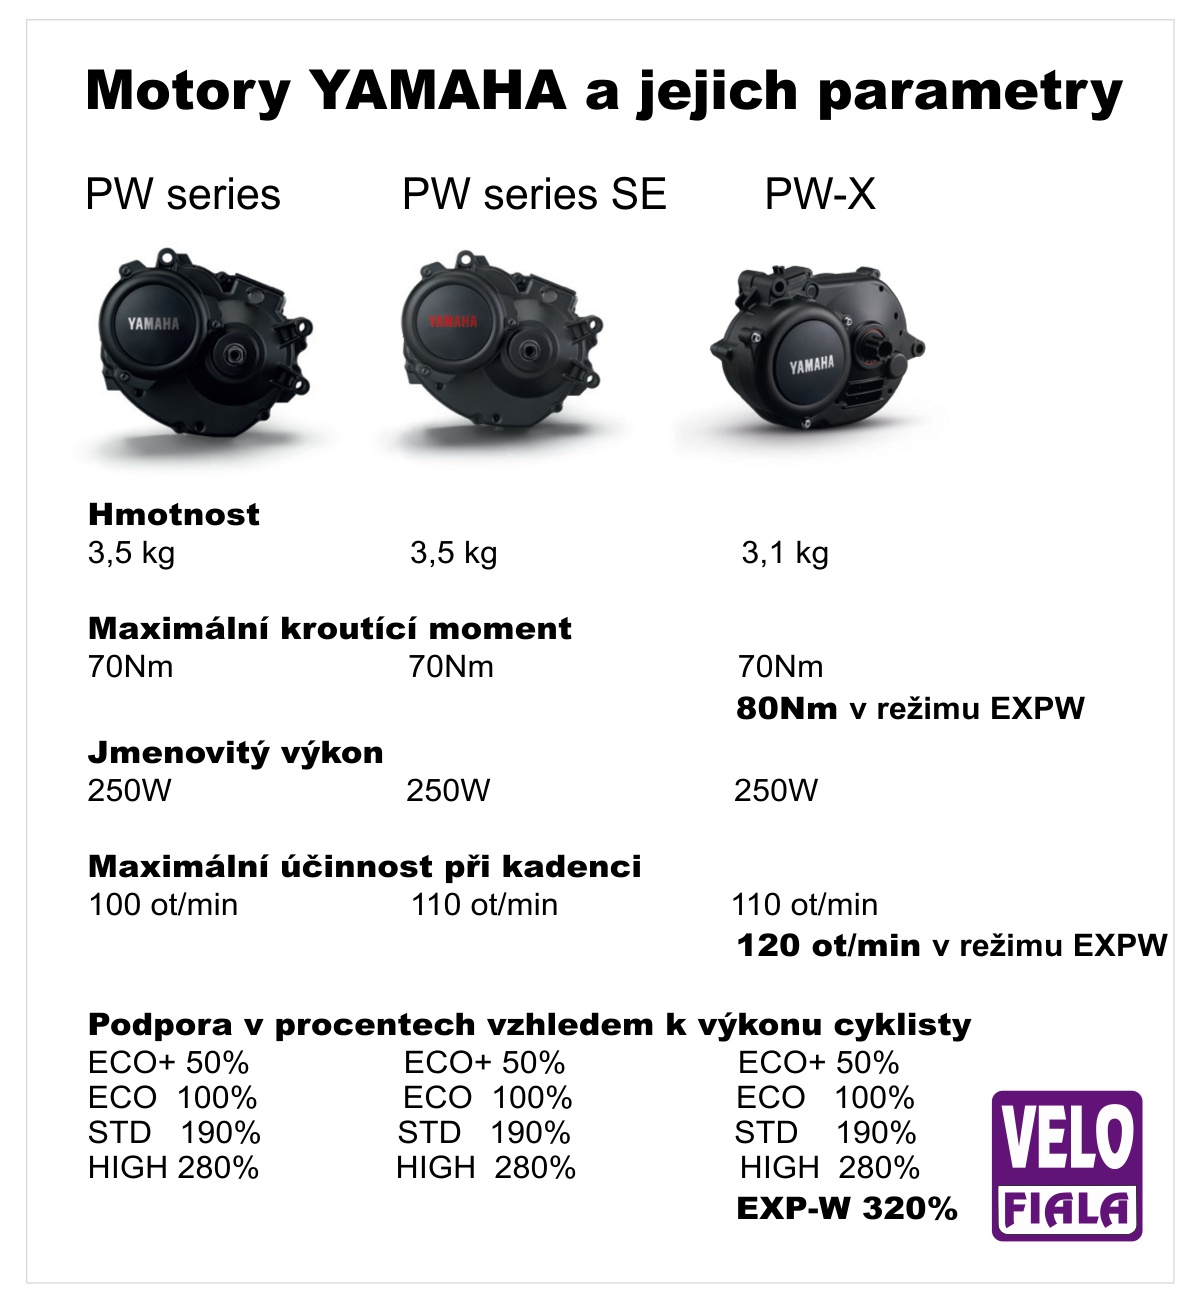 Porovnání motorů Yamaha